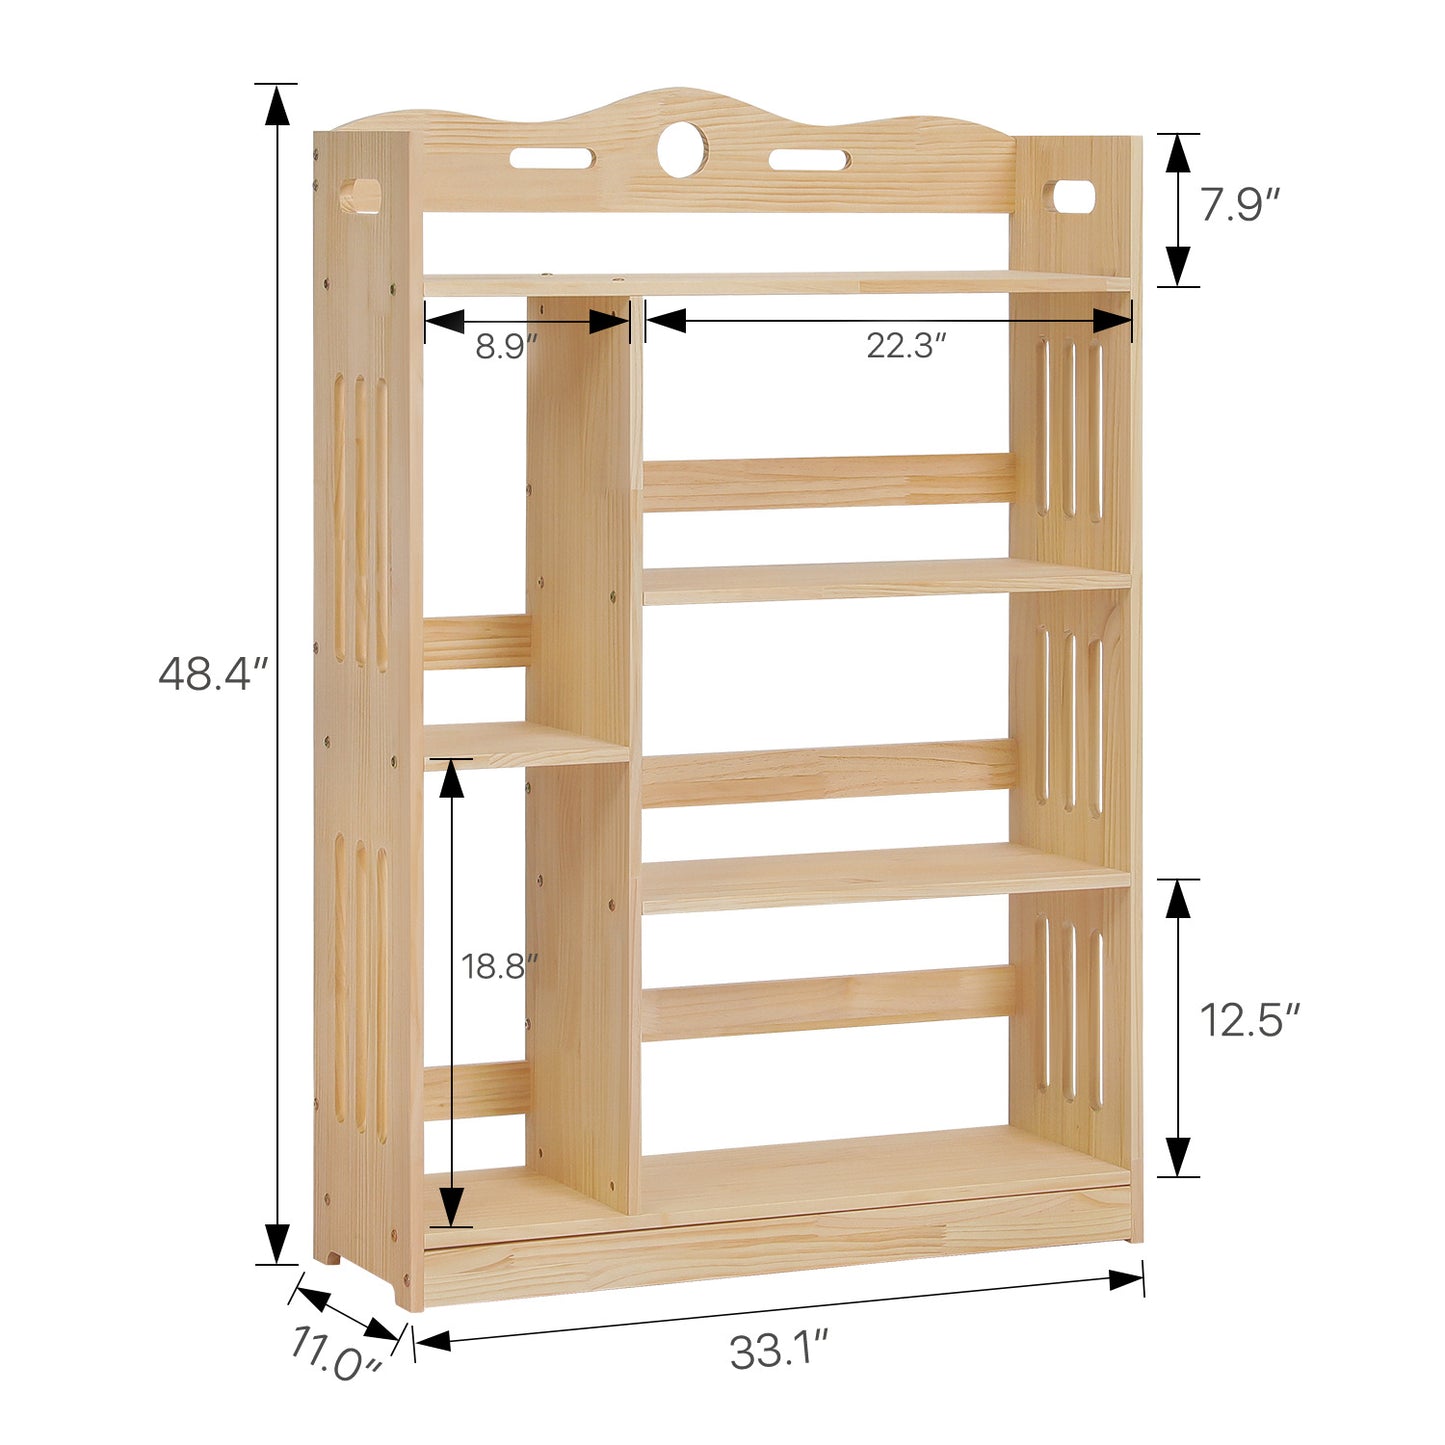 Wooden Display Storage Organizer - 4 Tier - 33" - Natural